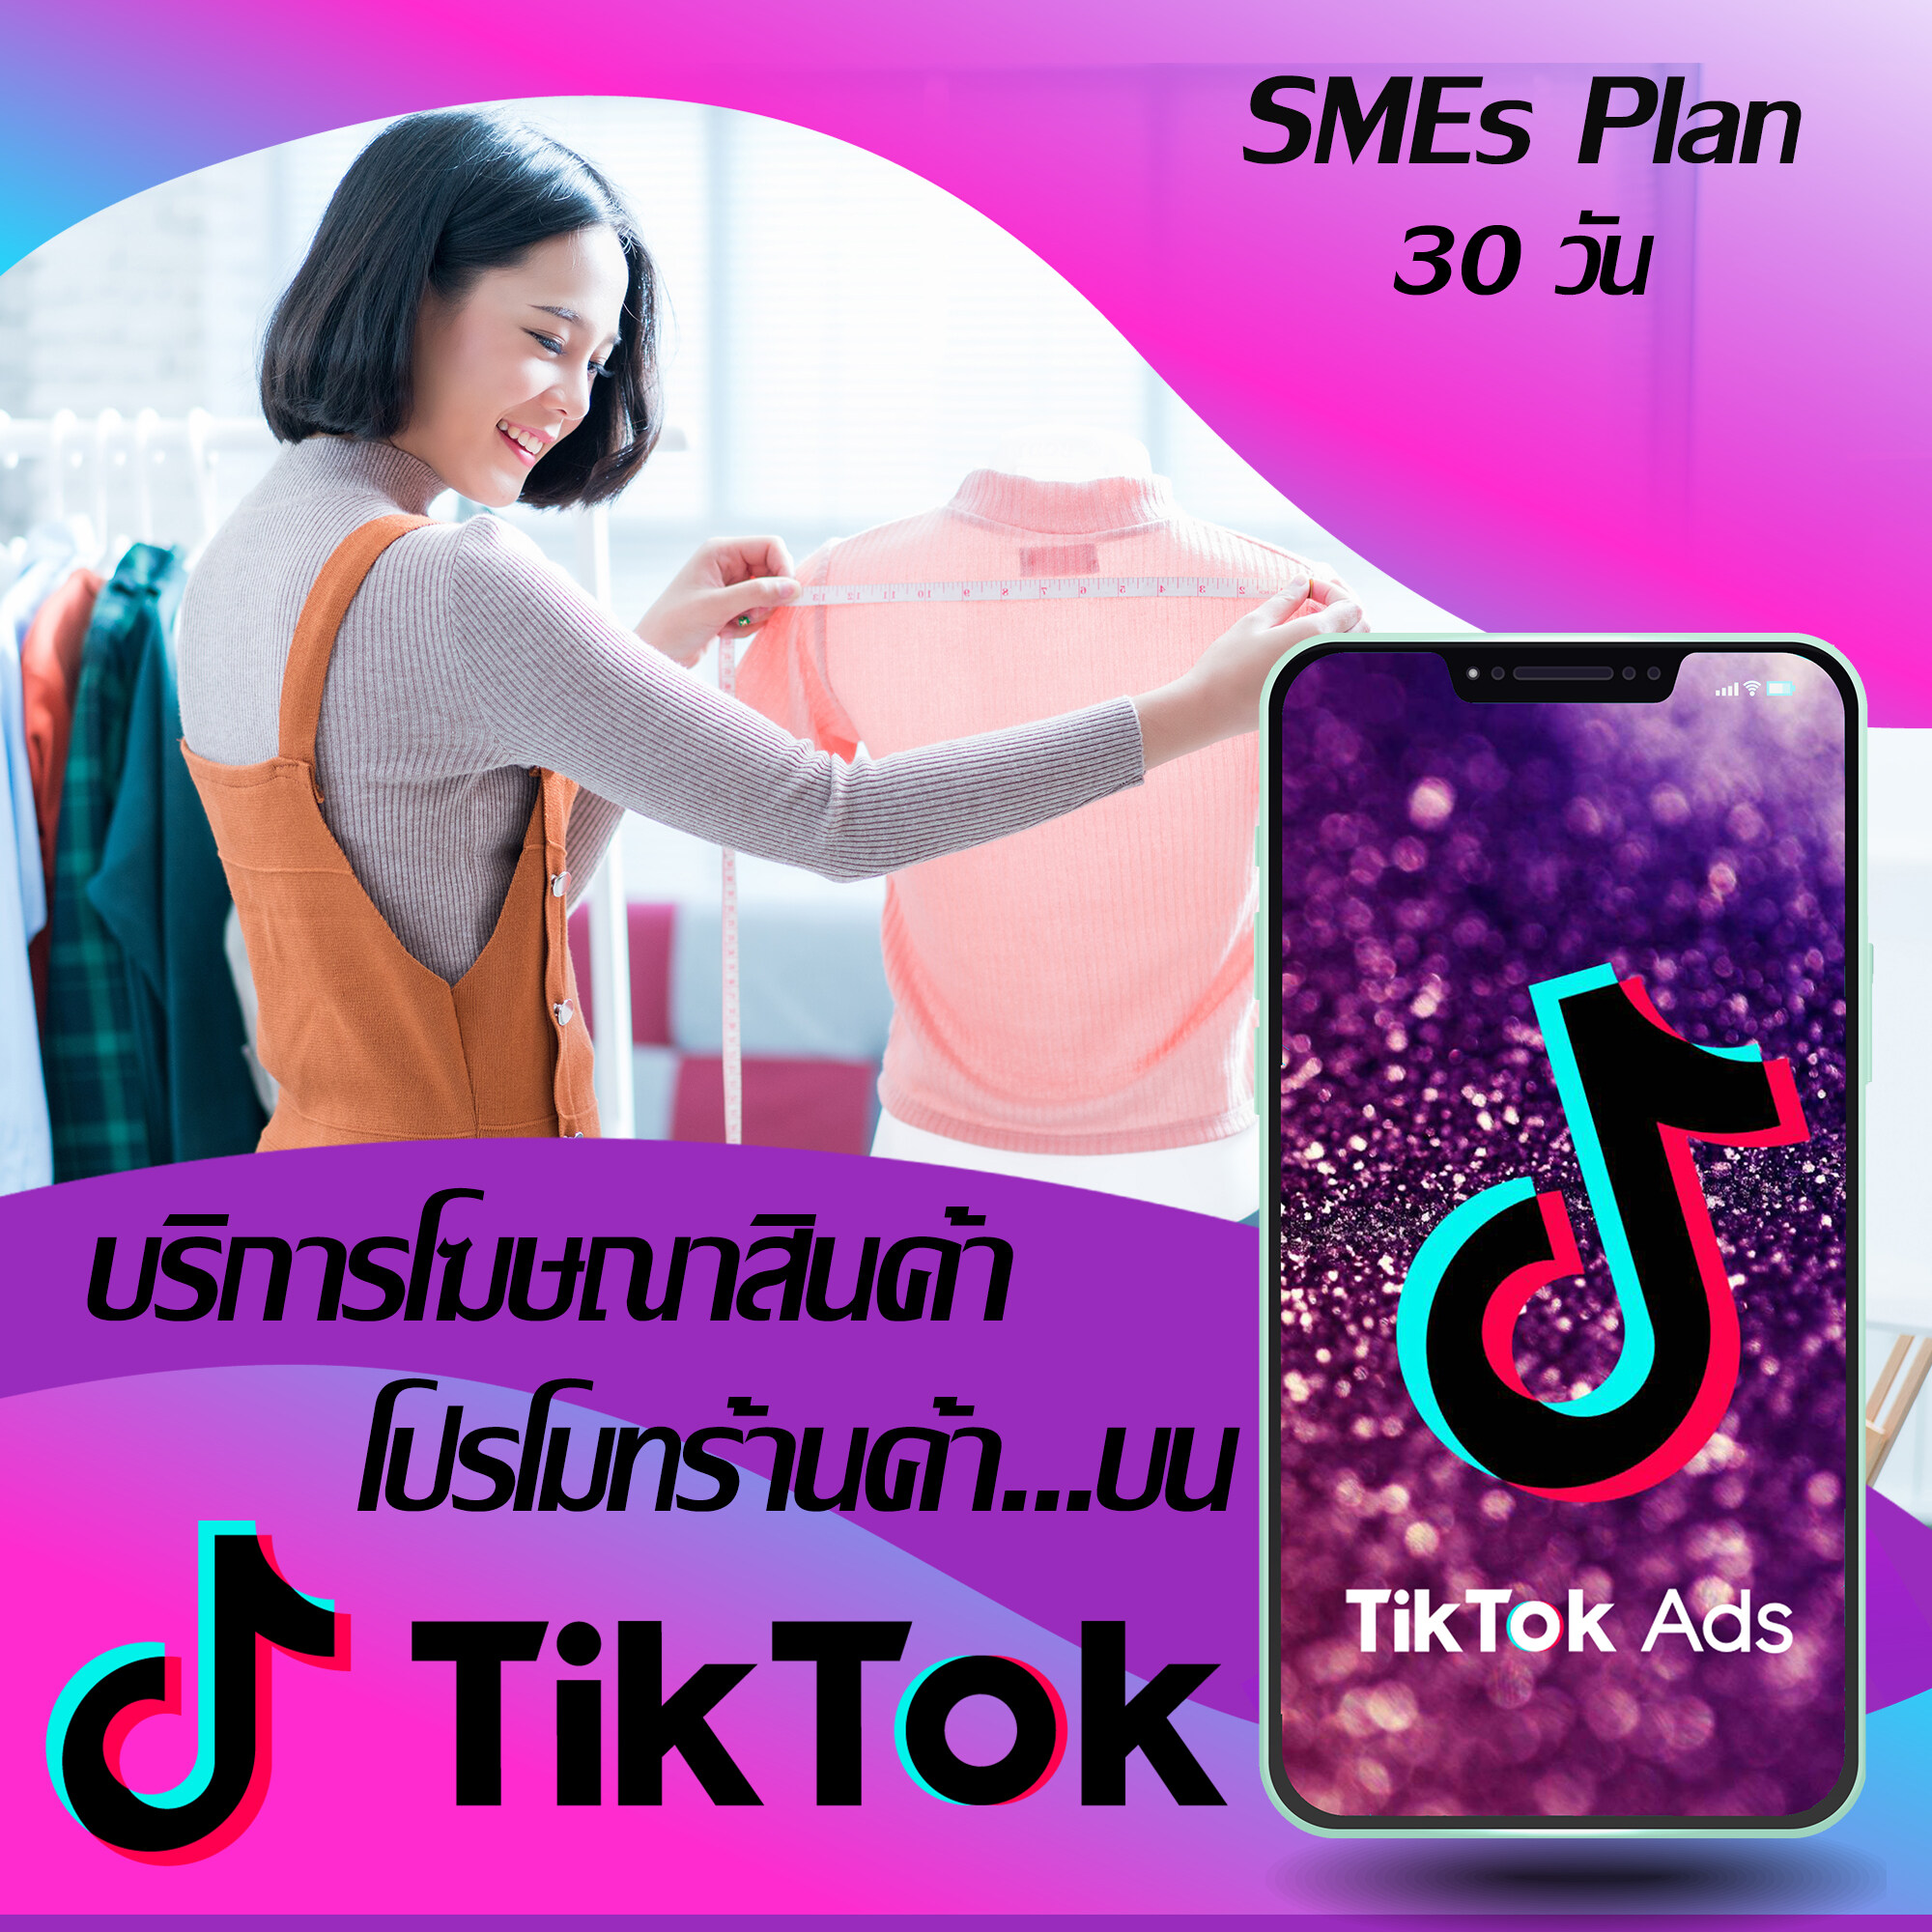 บริการโฆษณาเพิ่มยอดขาย โปรโมทร้านค้า โปรโมทสินค้าบน ติ๊กต๊อก TikTok Ads : [SMEs Plan : 30 วัน] by NEXTRIX